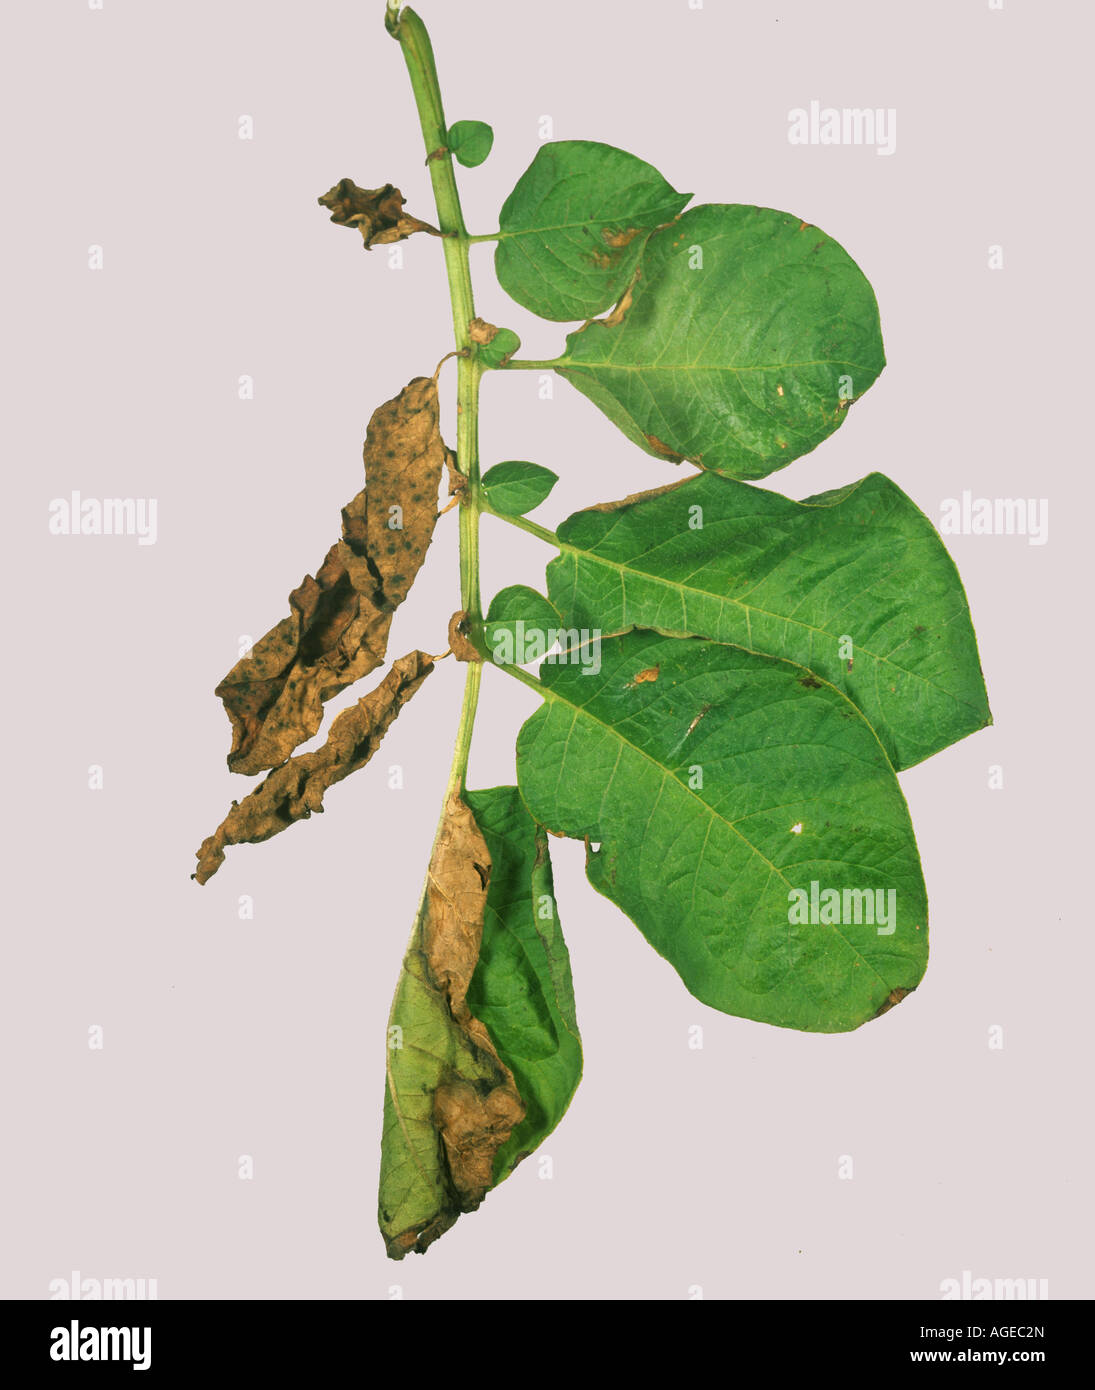 Verticillium wilt Verticillium albo atrum typical one side damage to a potato leaf Stock Photo